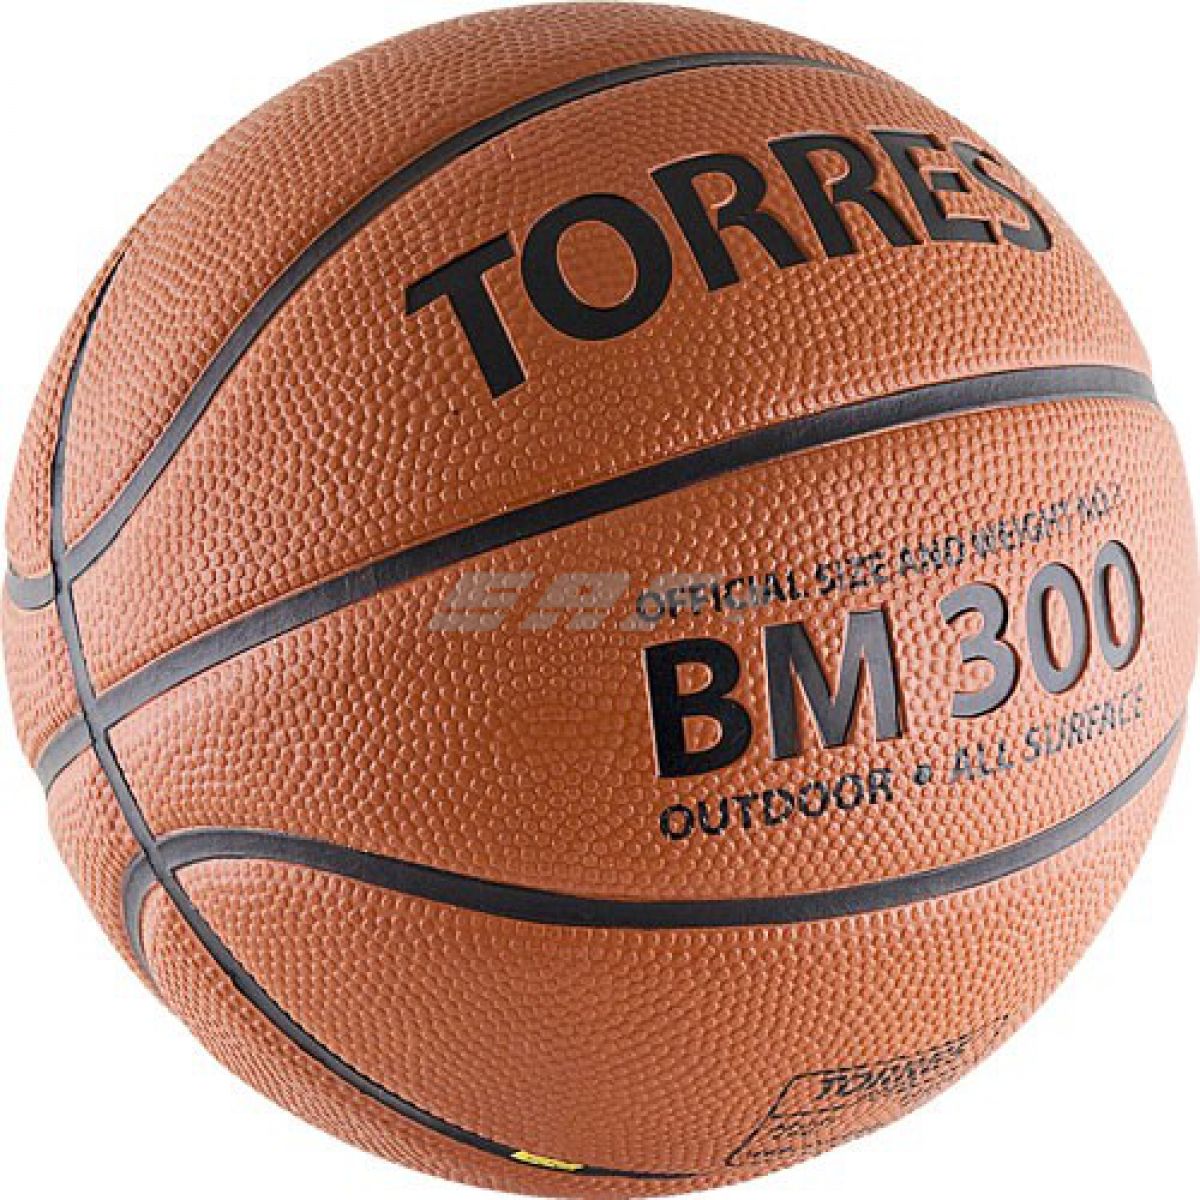 Мяч баскетбольный TORRES BM300